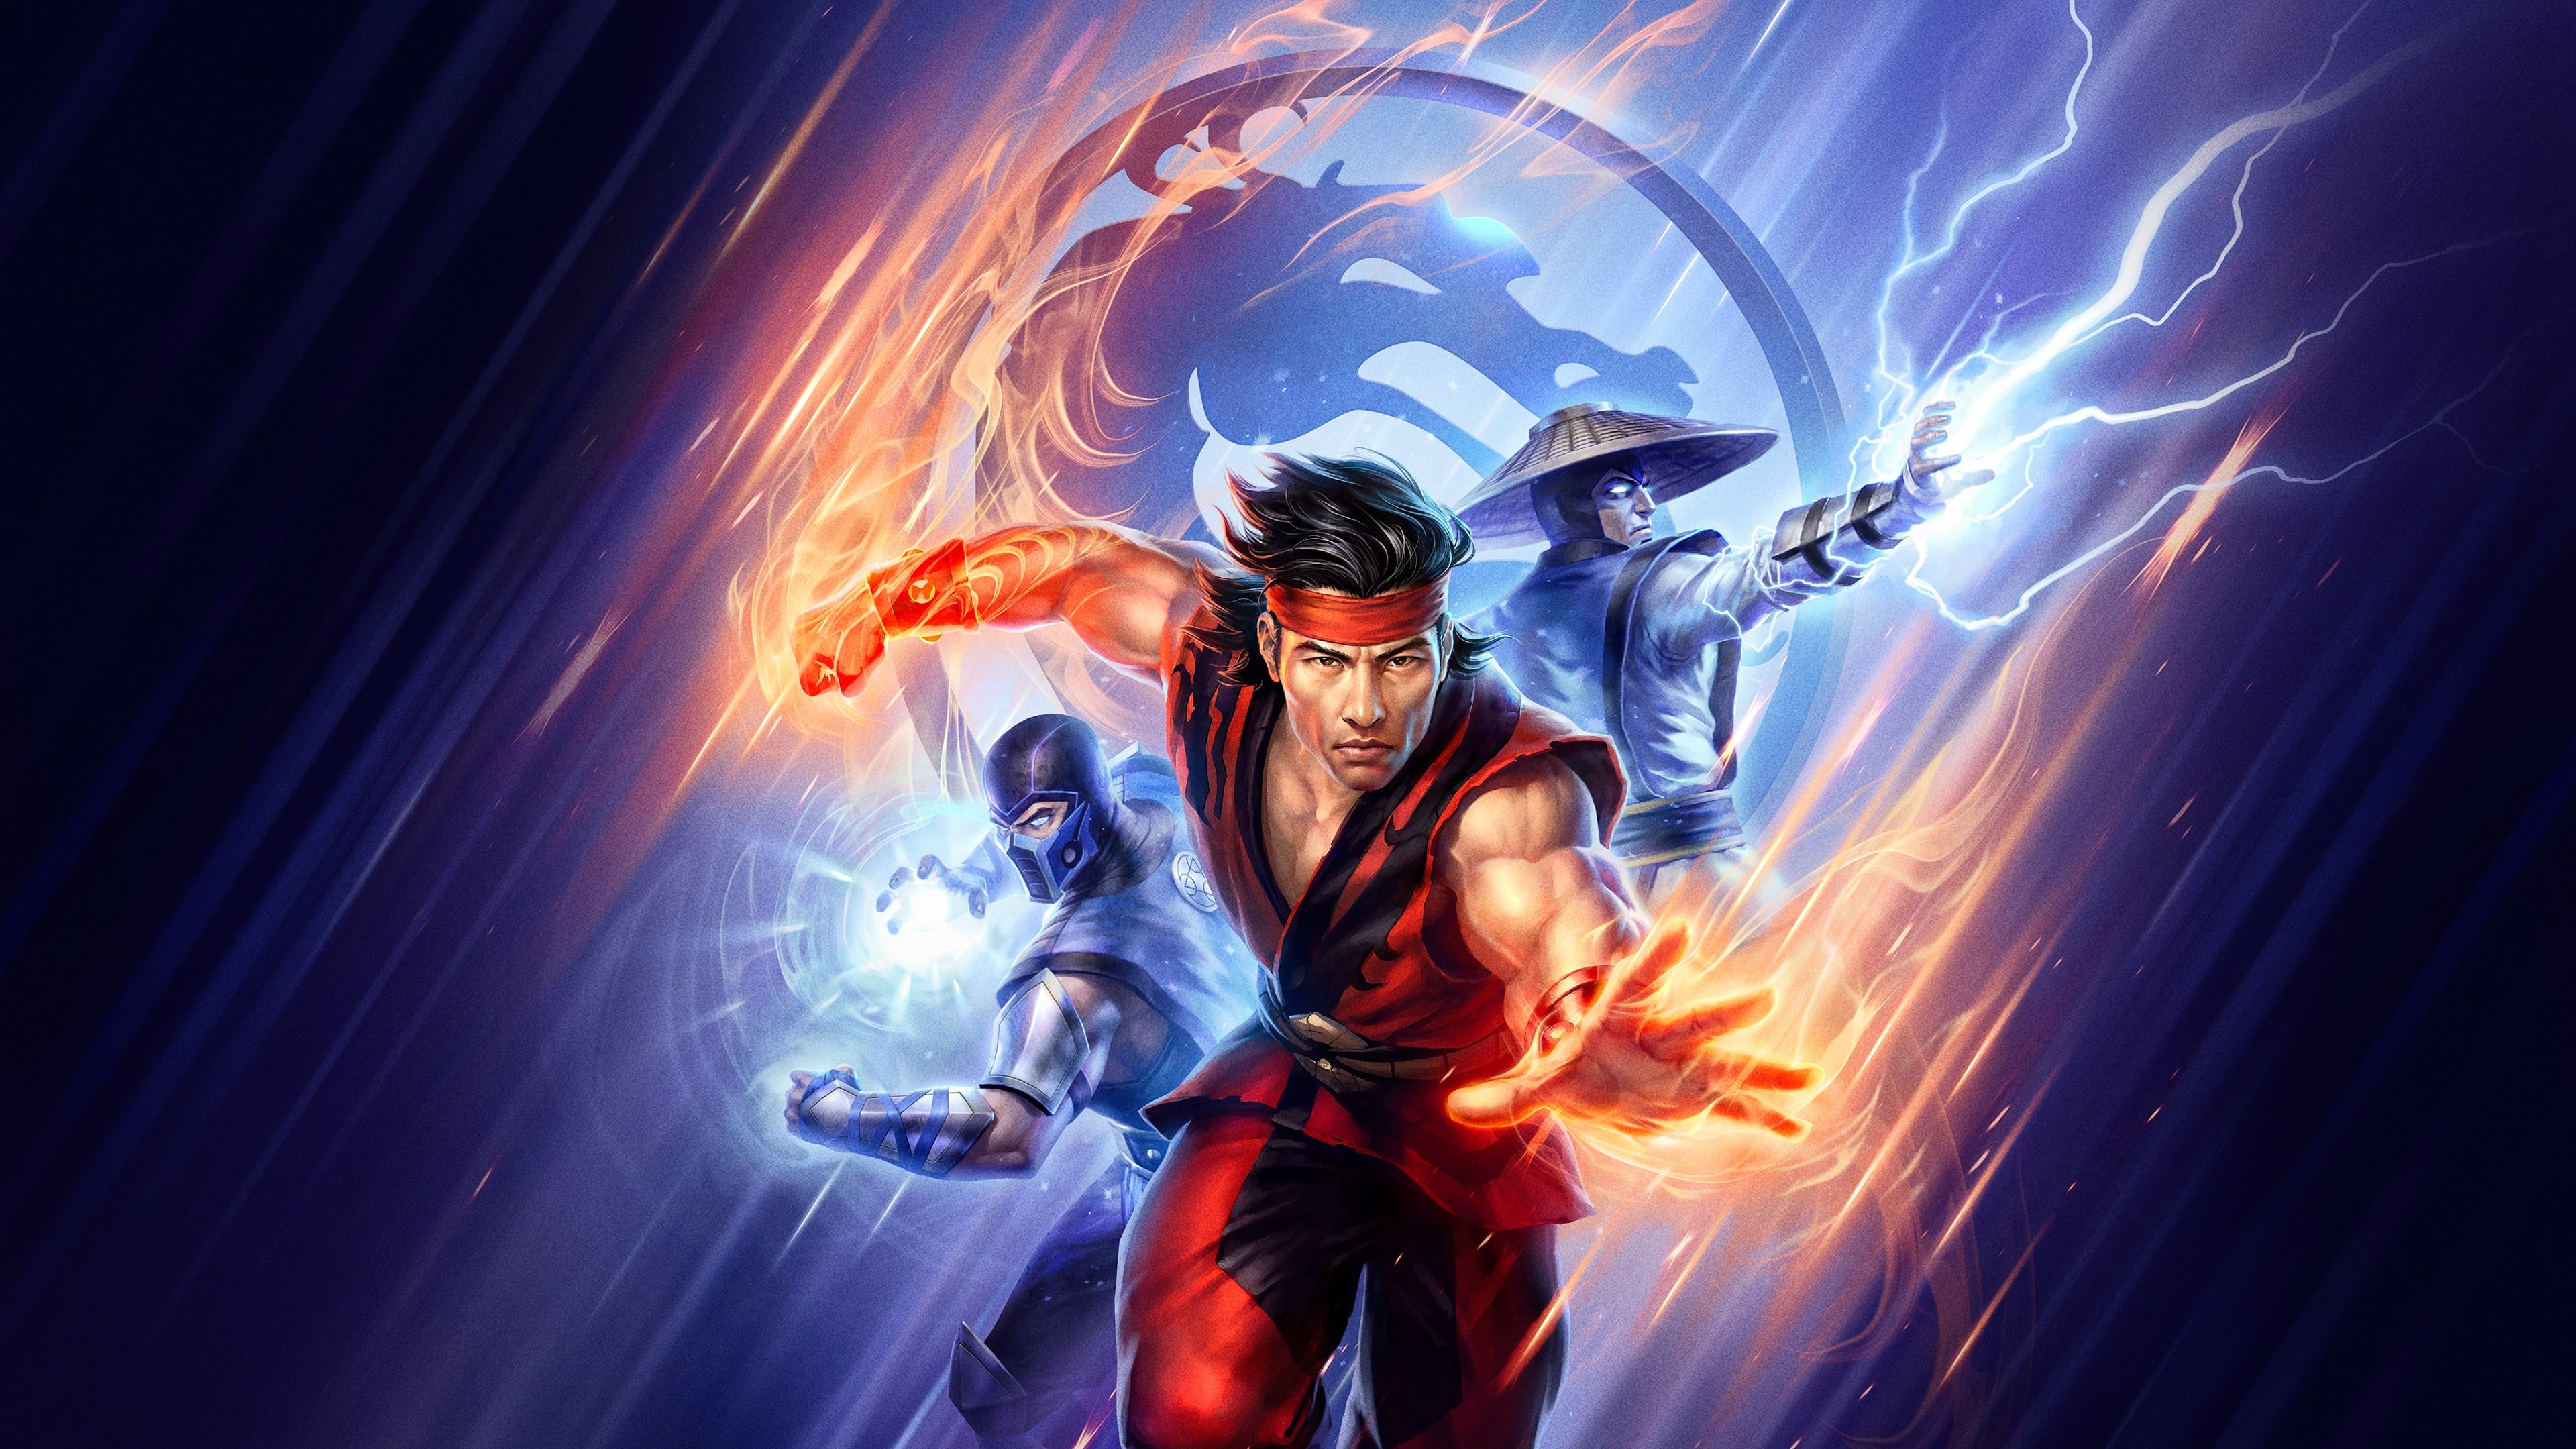 Poster Phim Huyền Thoại Rồng Đen: Cuộc Chiến Của Các Vương Quốc (Mortal Kombat Legends: Battle of the Realms)